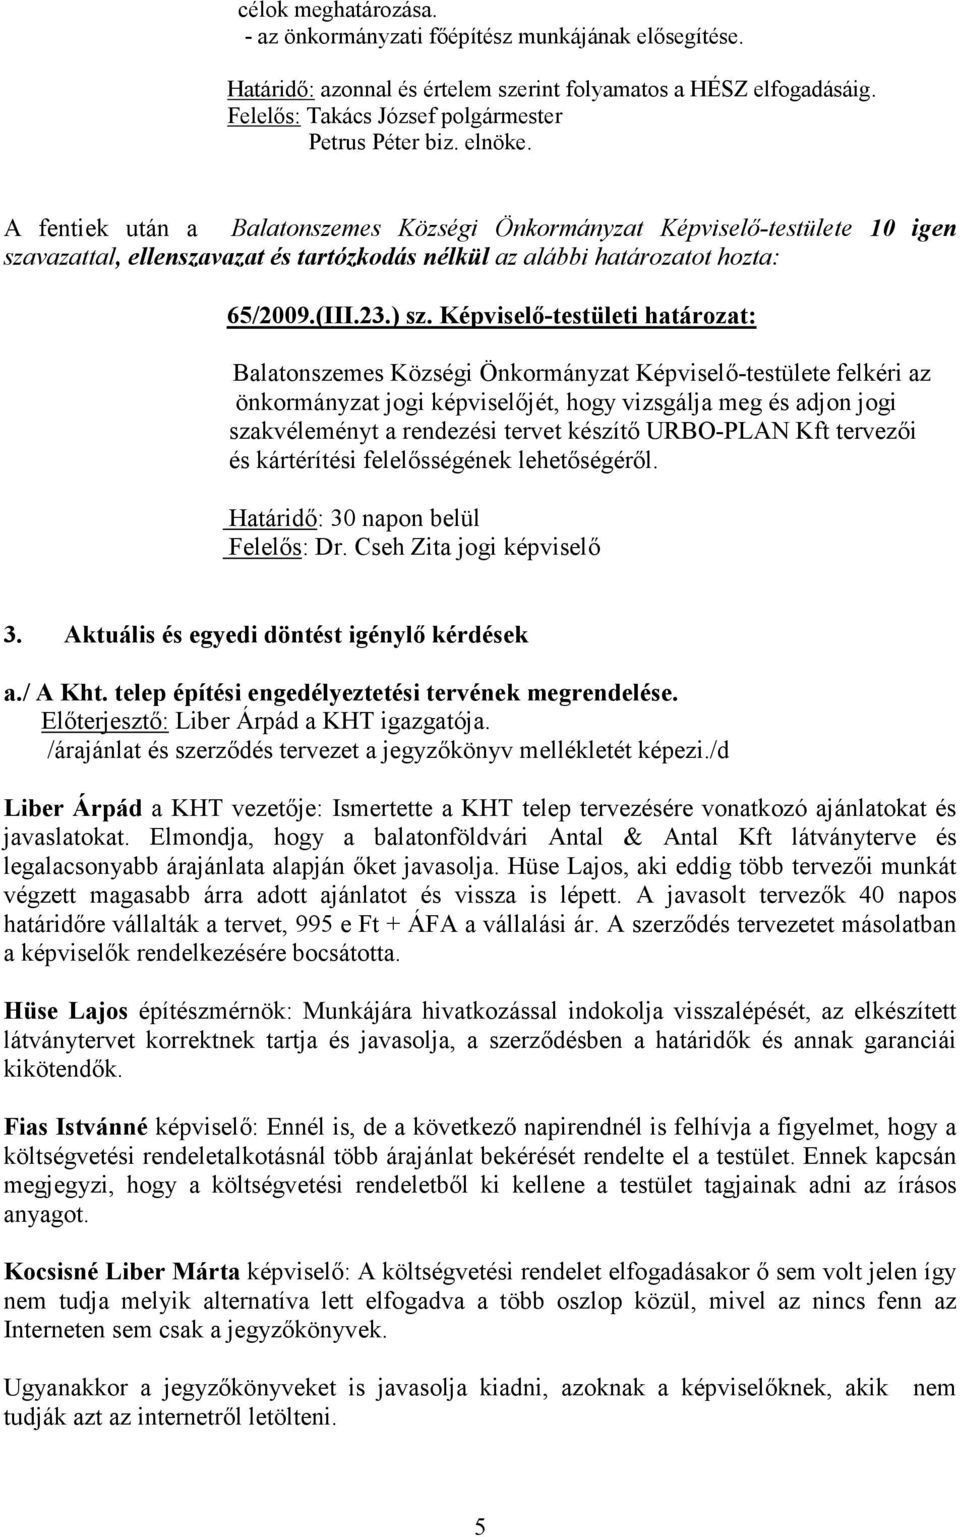 Képviselı-testületi határozat: Balatonszemes Községi Önkormányzat Képviselı-testülete felkéri az önkormányzat jogi képviselıjét, hogy vizsgálja meg és adjon jogi szakvéleményt a rendezési tervet